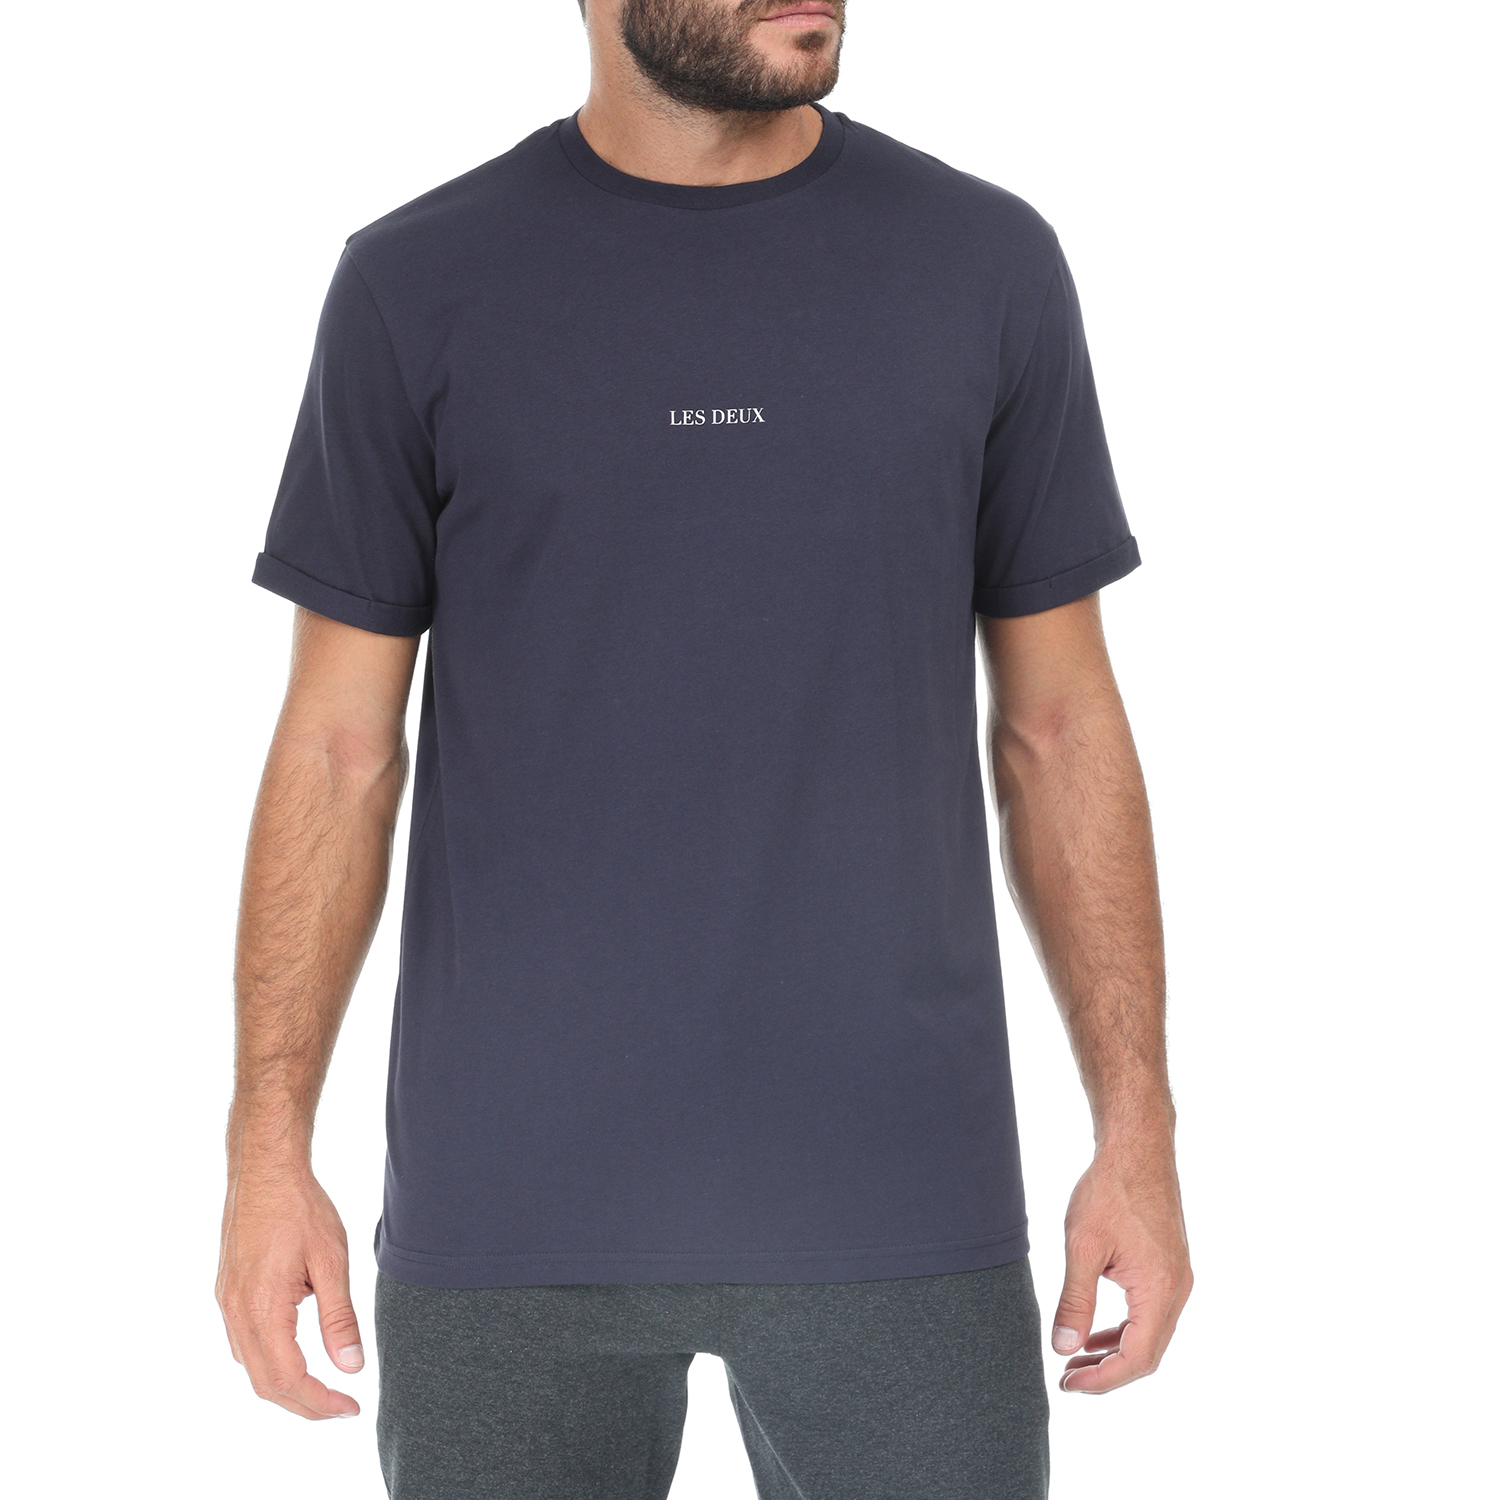 Ανδρικά/Ρούχα/Μπλούζες/Κοντομάνικες LES DEUX - Ανδρική κοντομάνικη μπλούζα LES DEUX μπλε